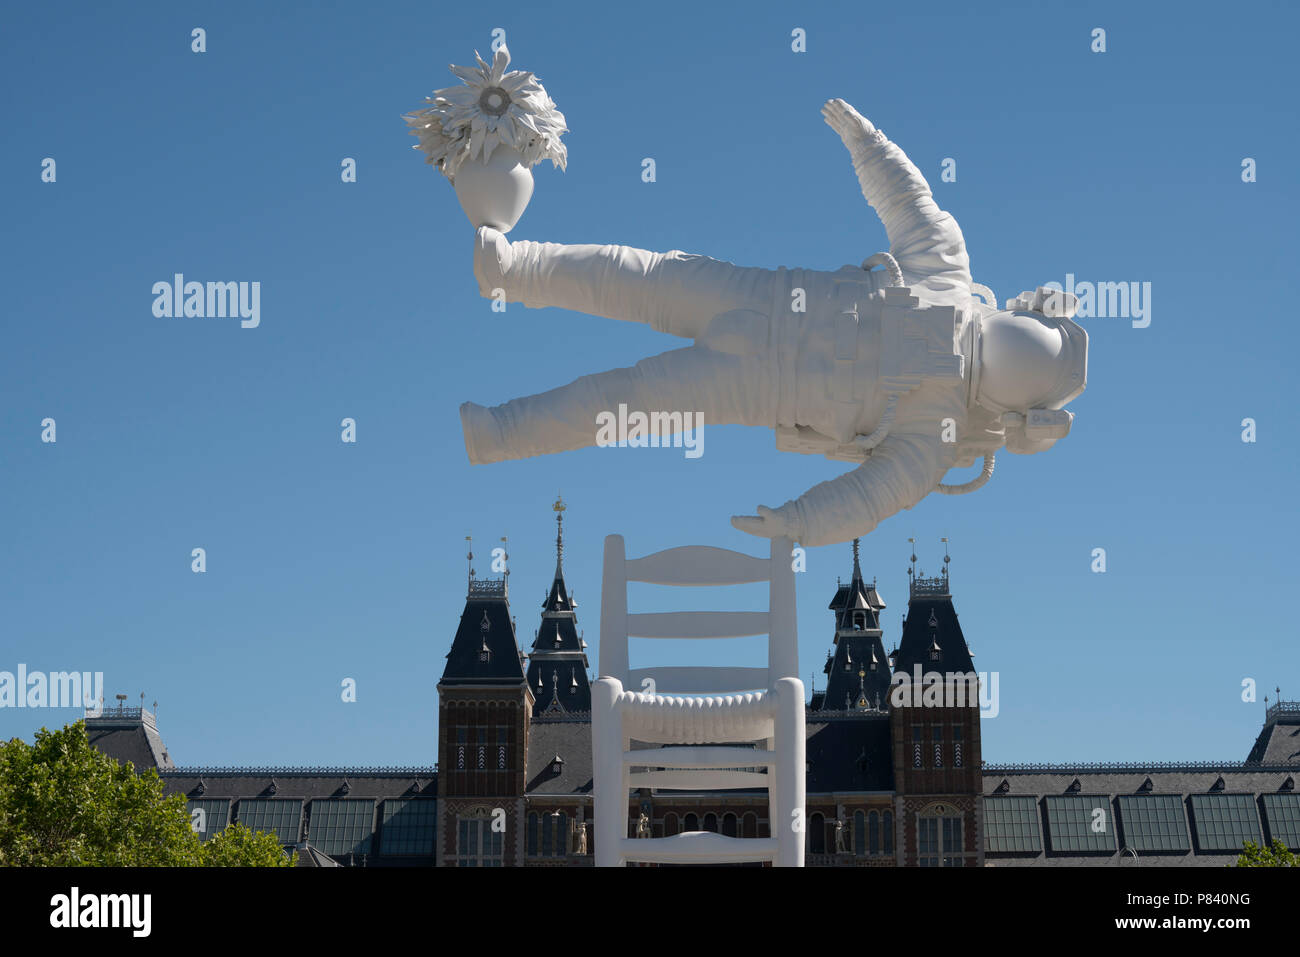 L'art de l'astronaute sur la place du musée à Amsterdam par Joseph Klibansky Banque D'Images